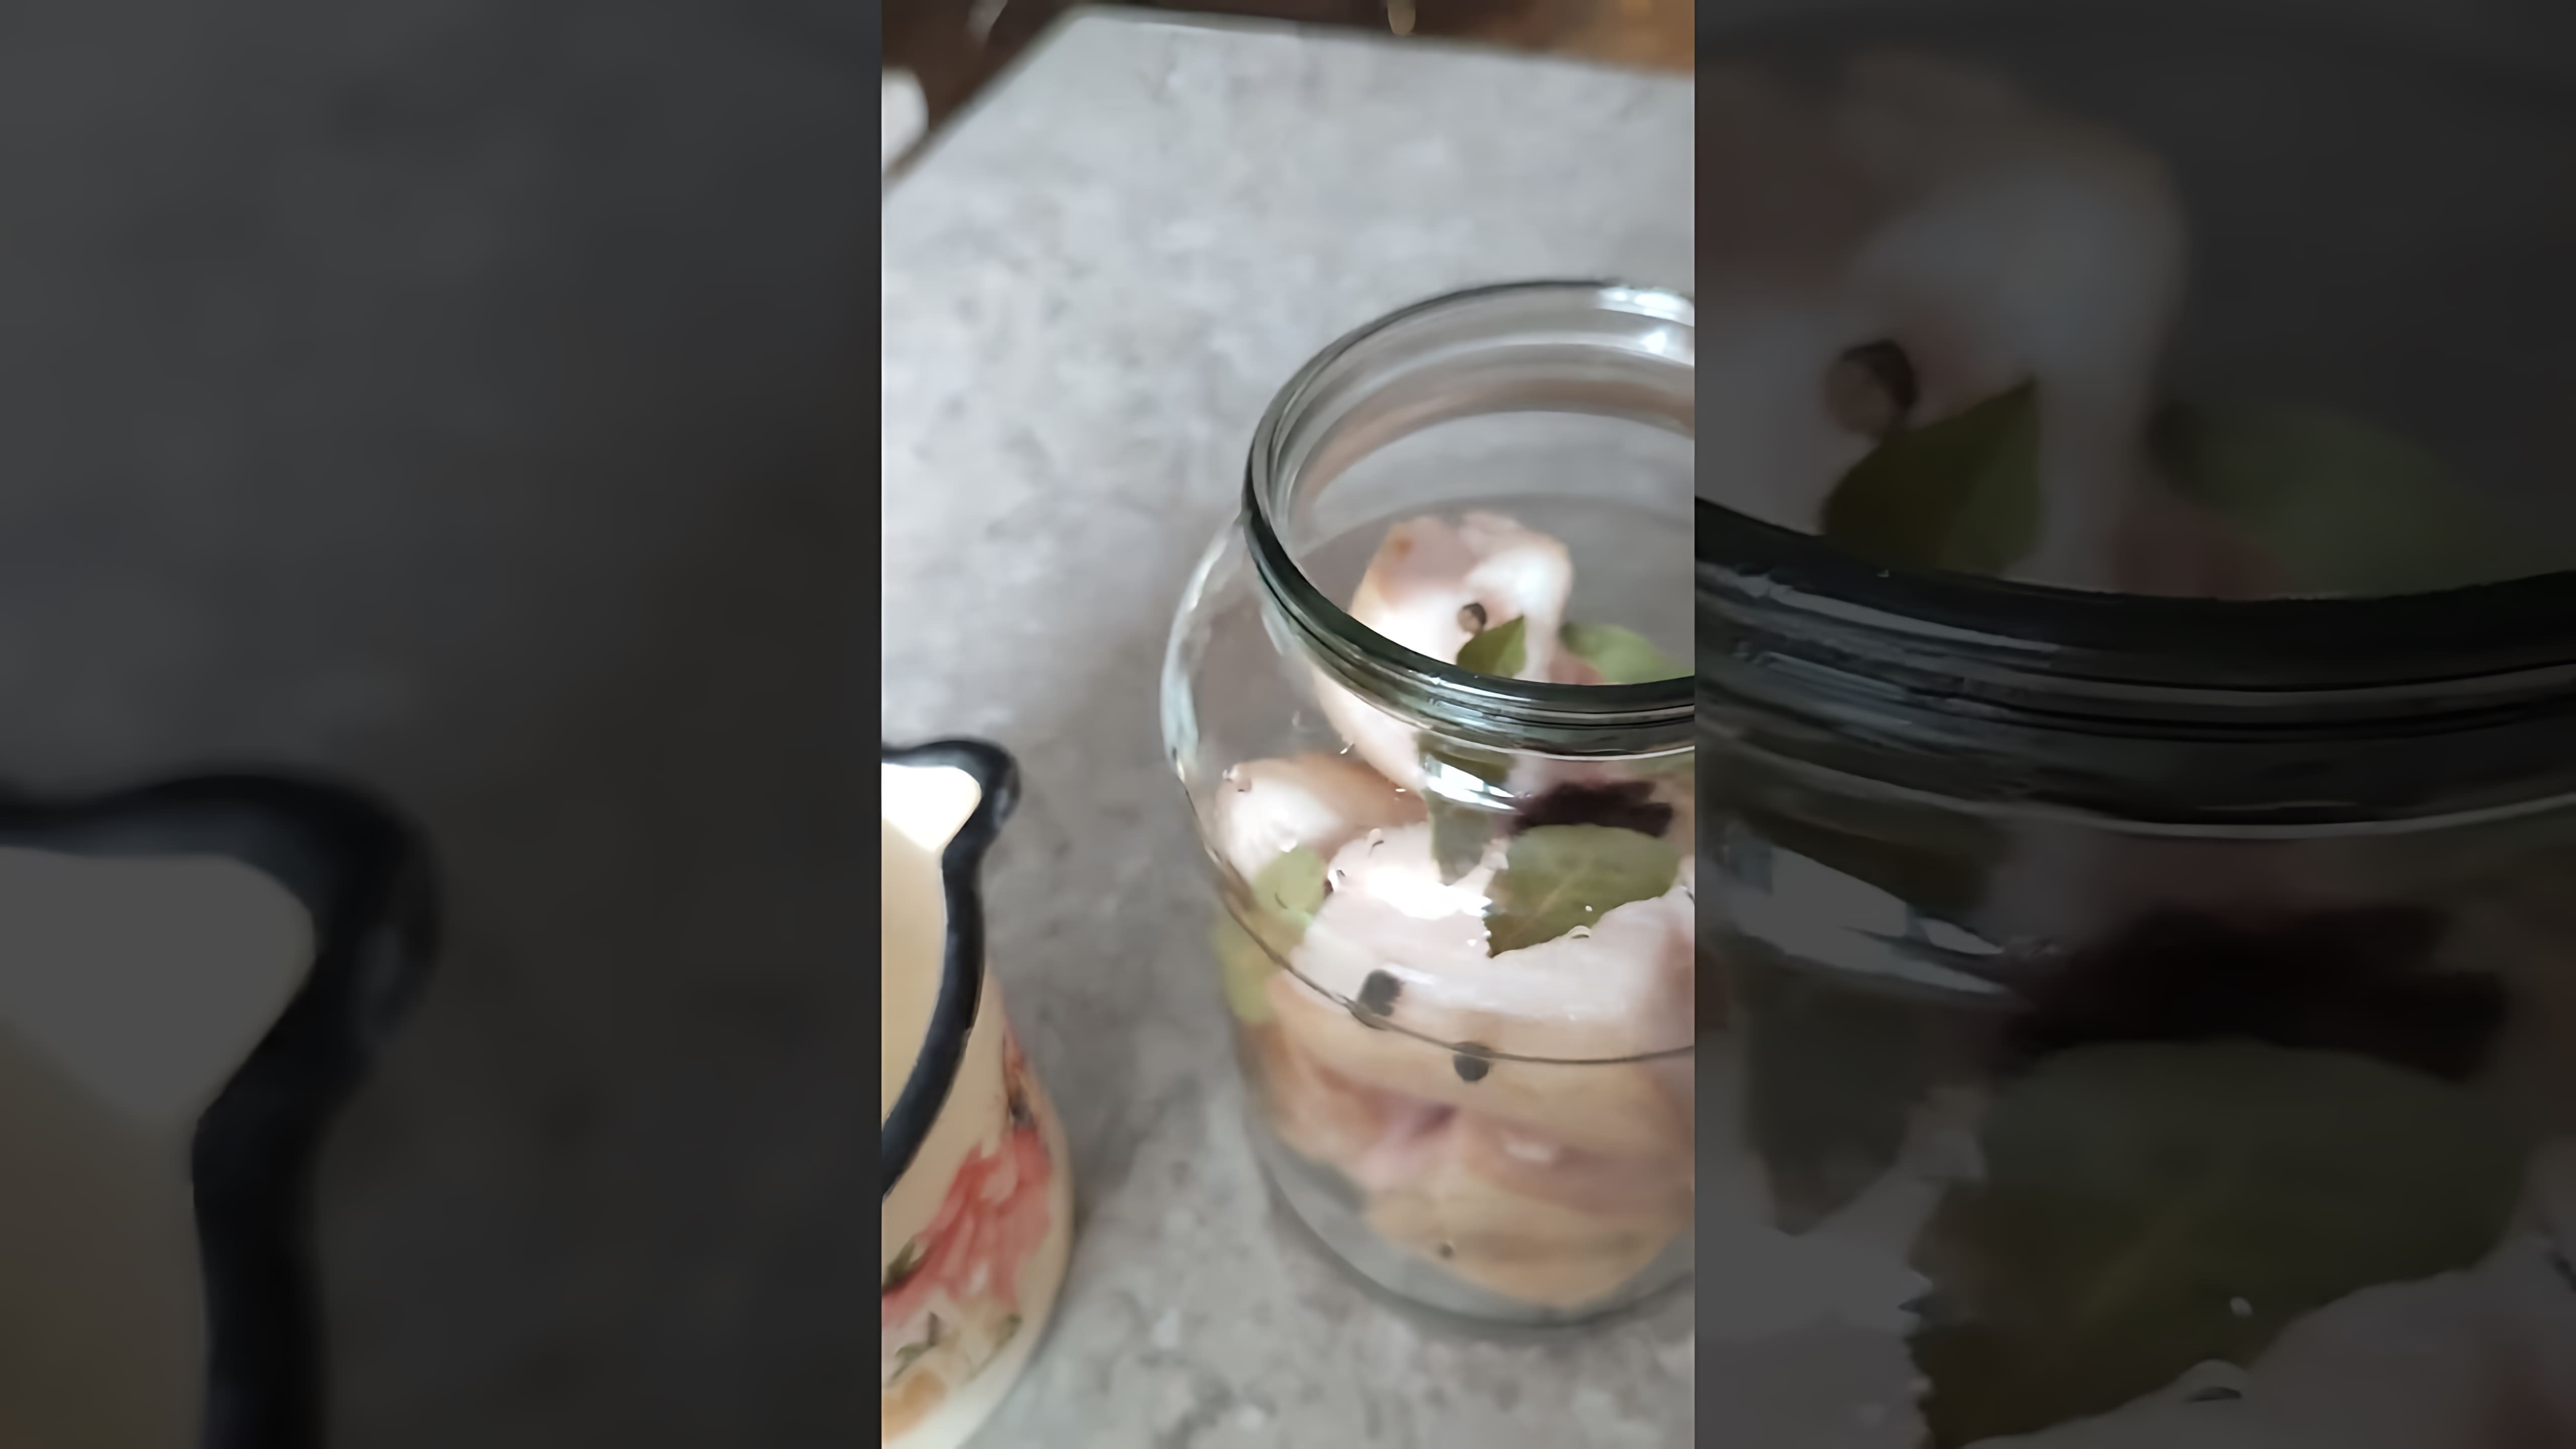 В этом видео демонстрируется рецепт засолки мягкого и ароматного сала, которое можно хранить длительное время